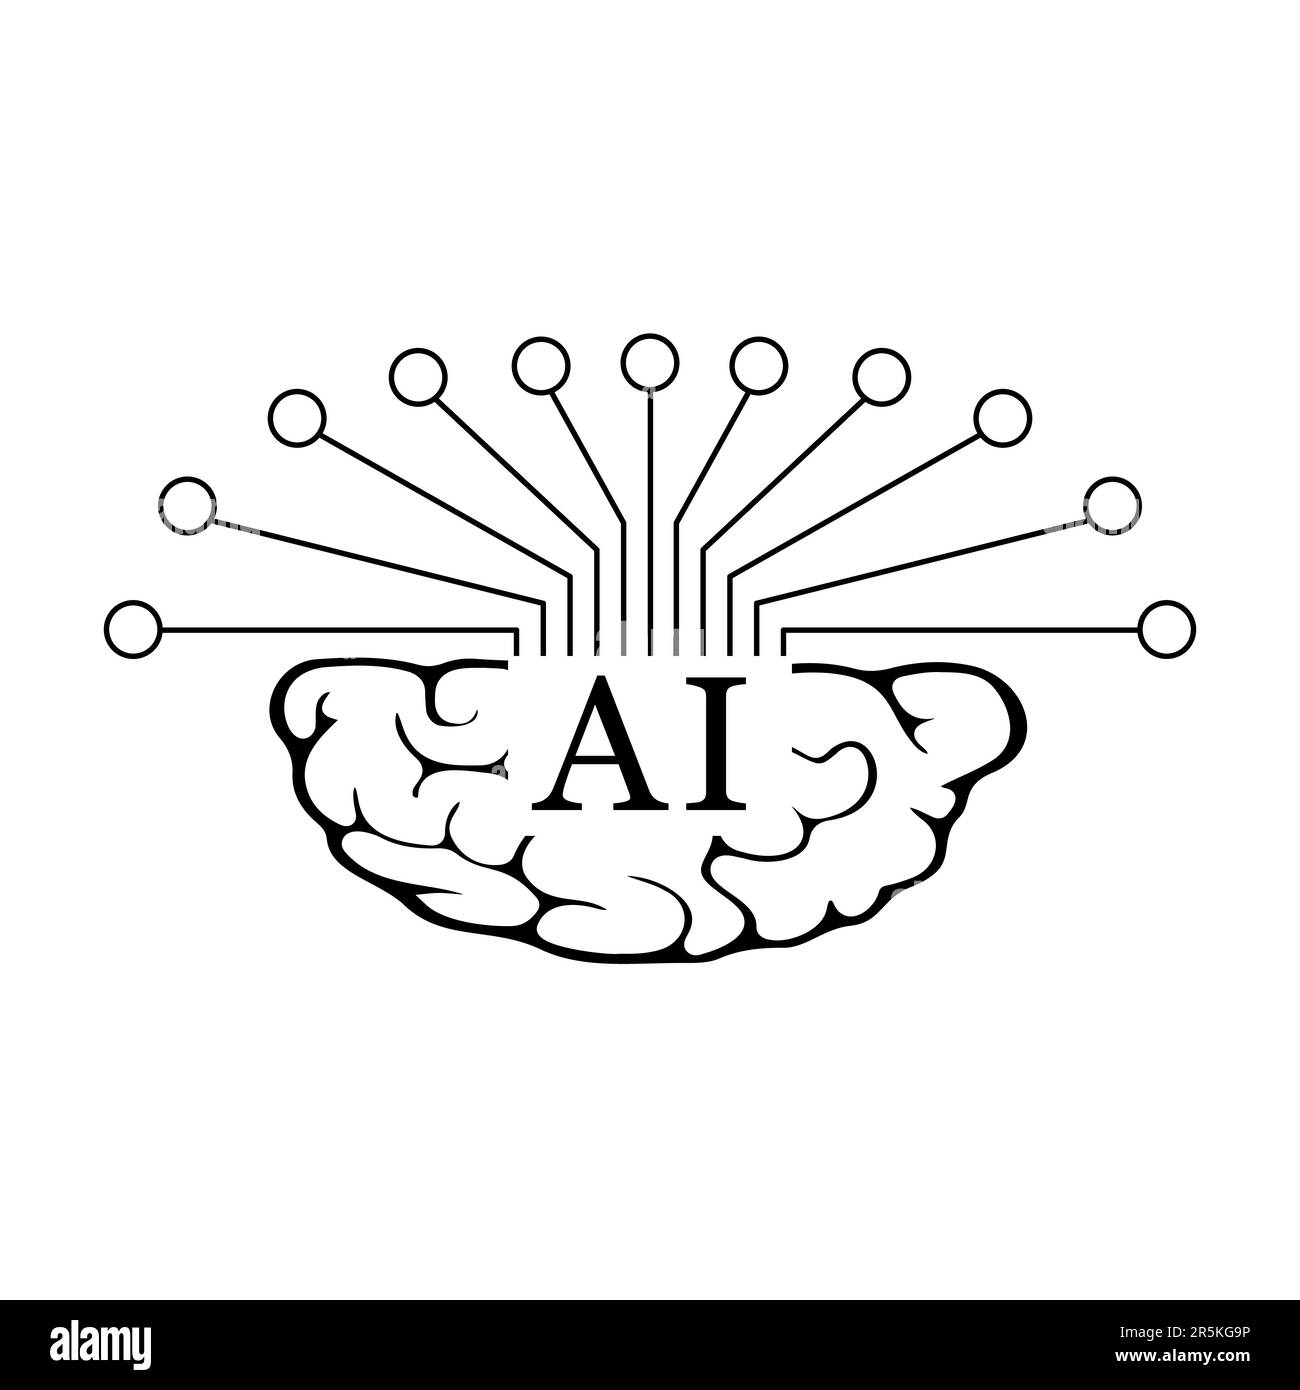 Un icono de inteligencia artificial negro plano es un elemento de diseño gráfico elegante y elegante que representa el concepto de inteligencia artificial o IA. Ilustración del Vector